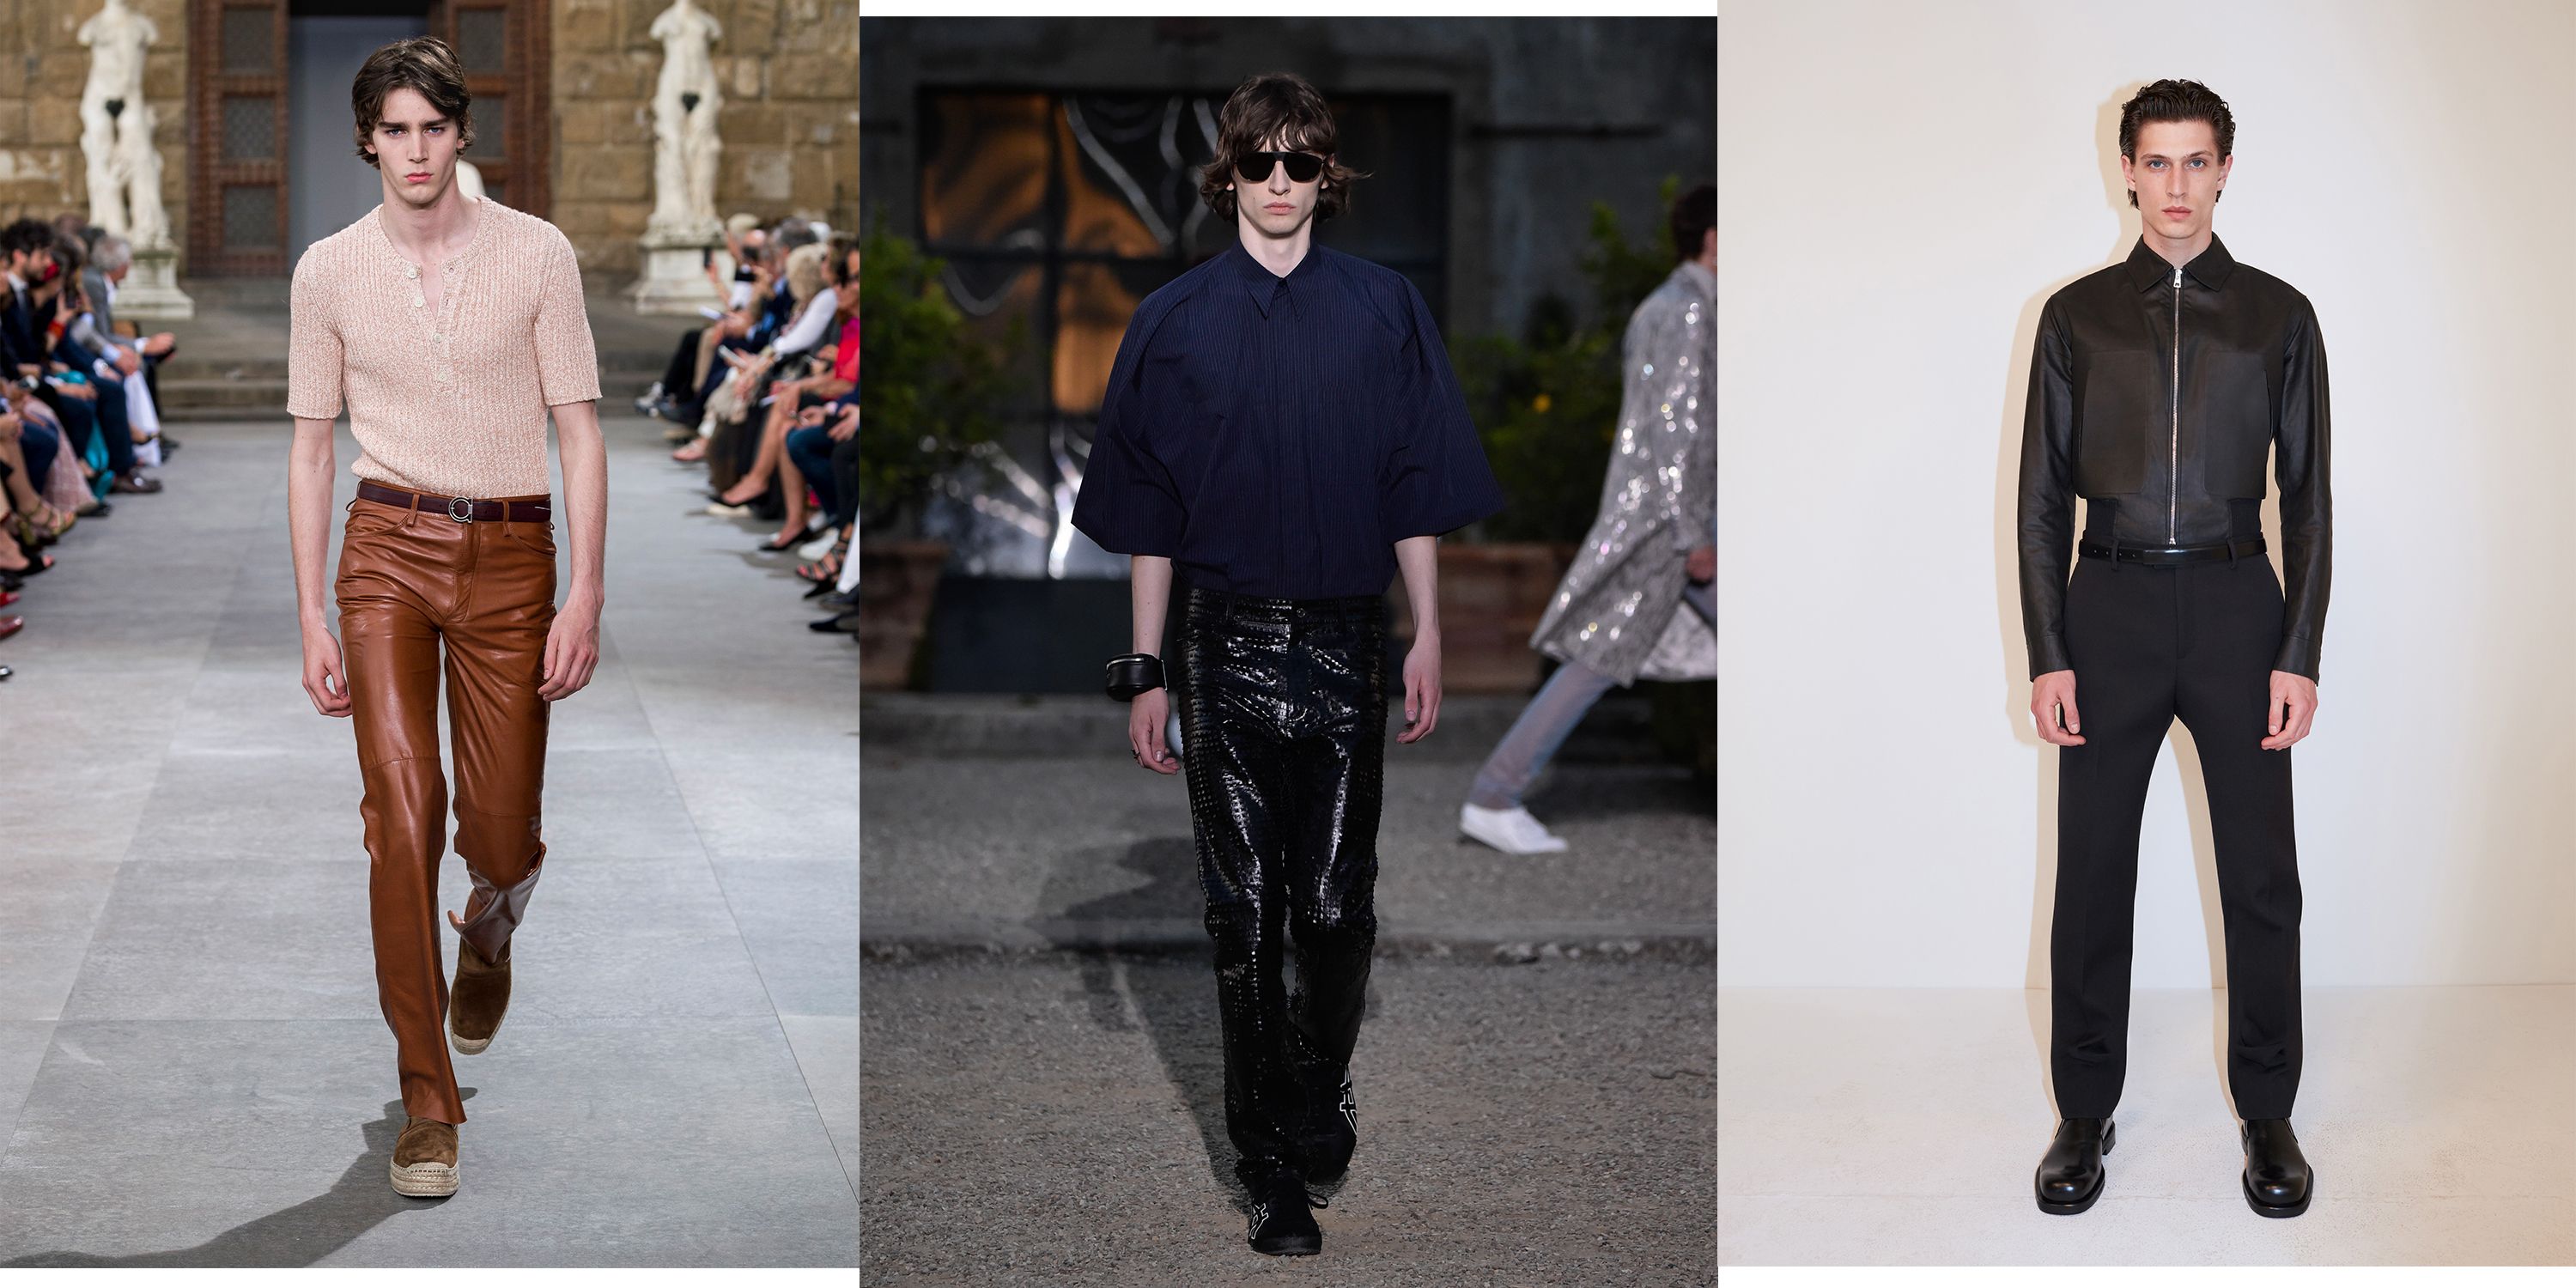 Las tendencias en ropa de hombre para la primavera 2020 - La pasarela Pitti Uomo 96 en Florencia